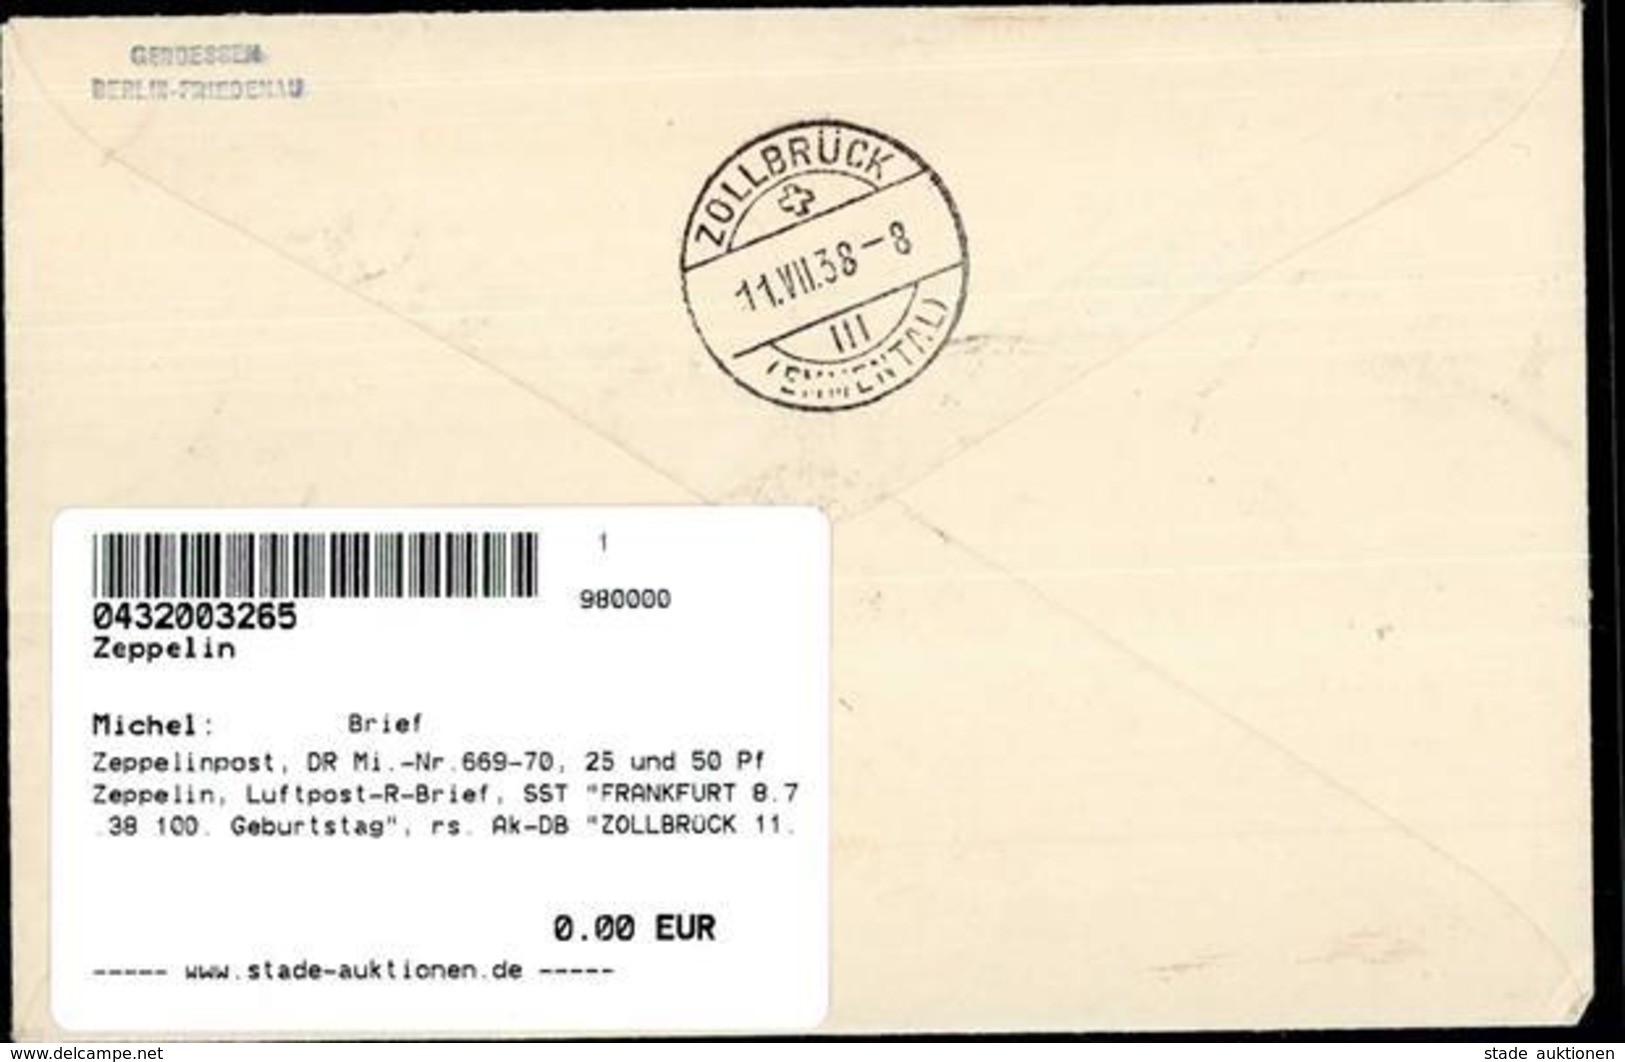 Zeppelinpost, DR Mi.-Nr.669-70, 25 Und 50 Pf Zeppelin, Luftpost-R-Brief, SST FRANKFURT 8.7.38 100. Geburtstag", Rs. Ak-D - Airships